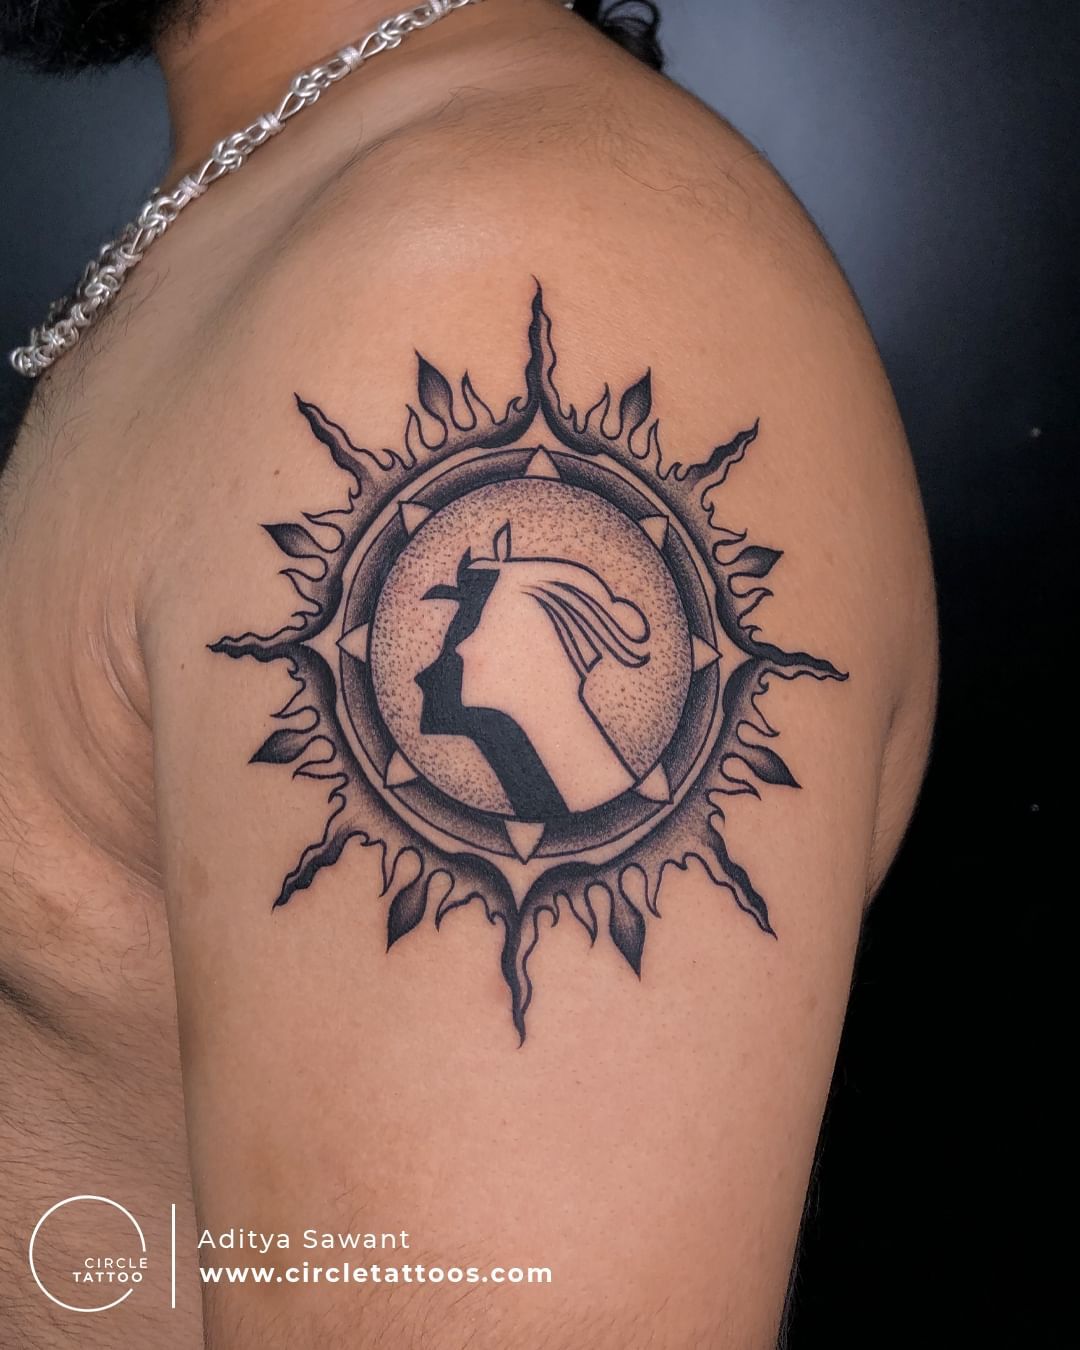 Aditya Name | Ink tattoo, Tattoo studio, Name tattoo